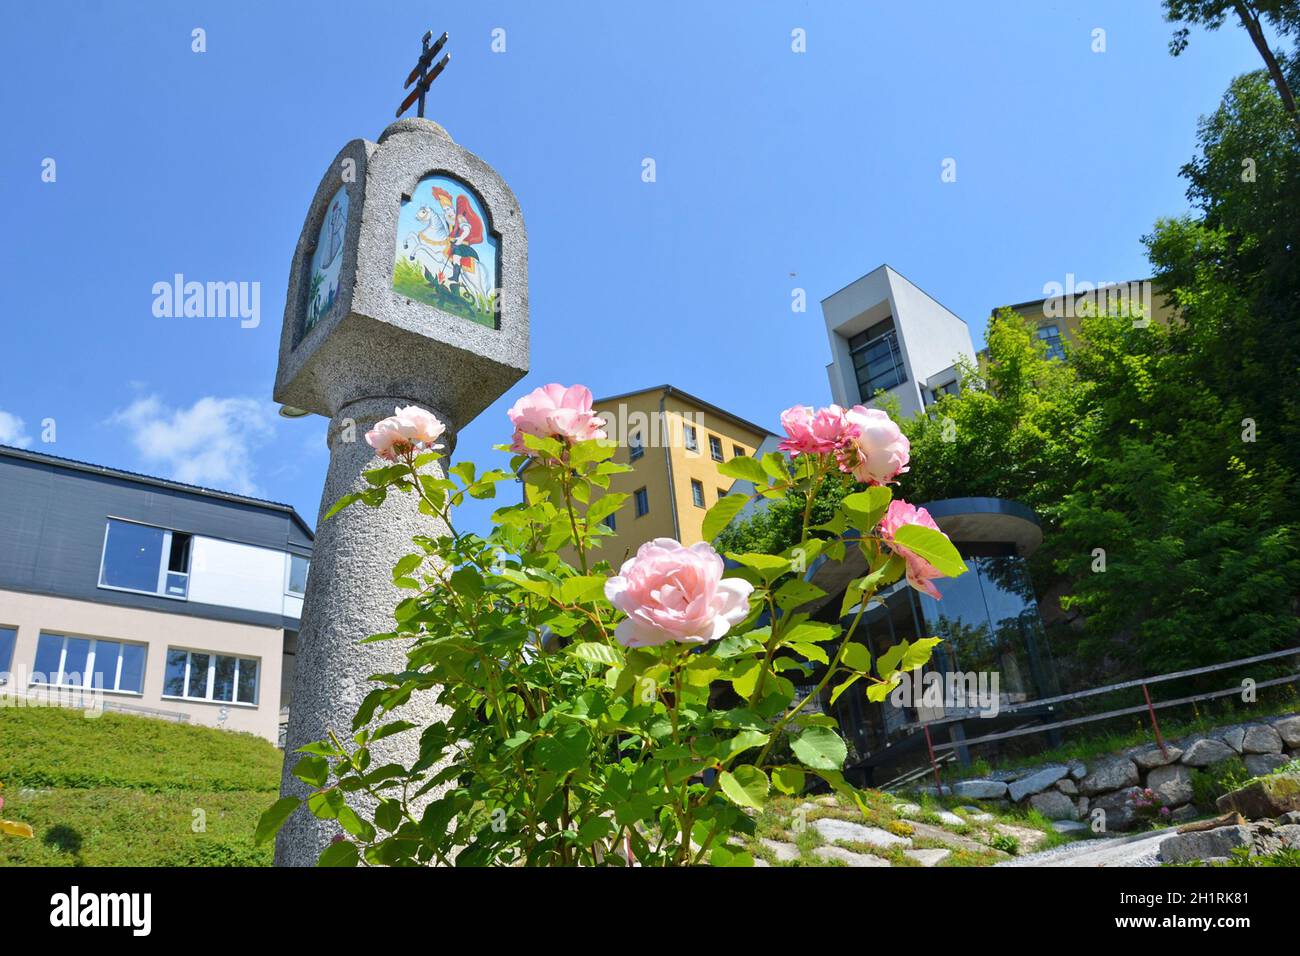 Bildstock und Rosen in Haslach, Mühlviertel, Oberösterreich, Österreich, Europa - Wayside shrine and roses in Haslach, Mühlviertel, Upper Austria, Aus Stock Photo